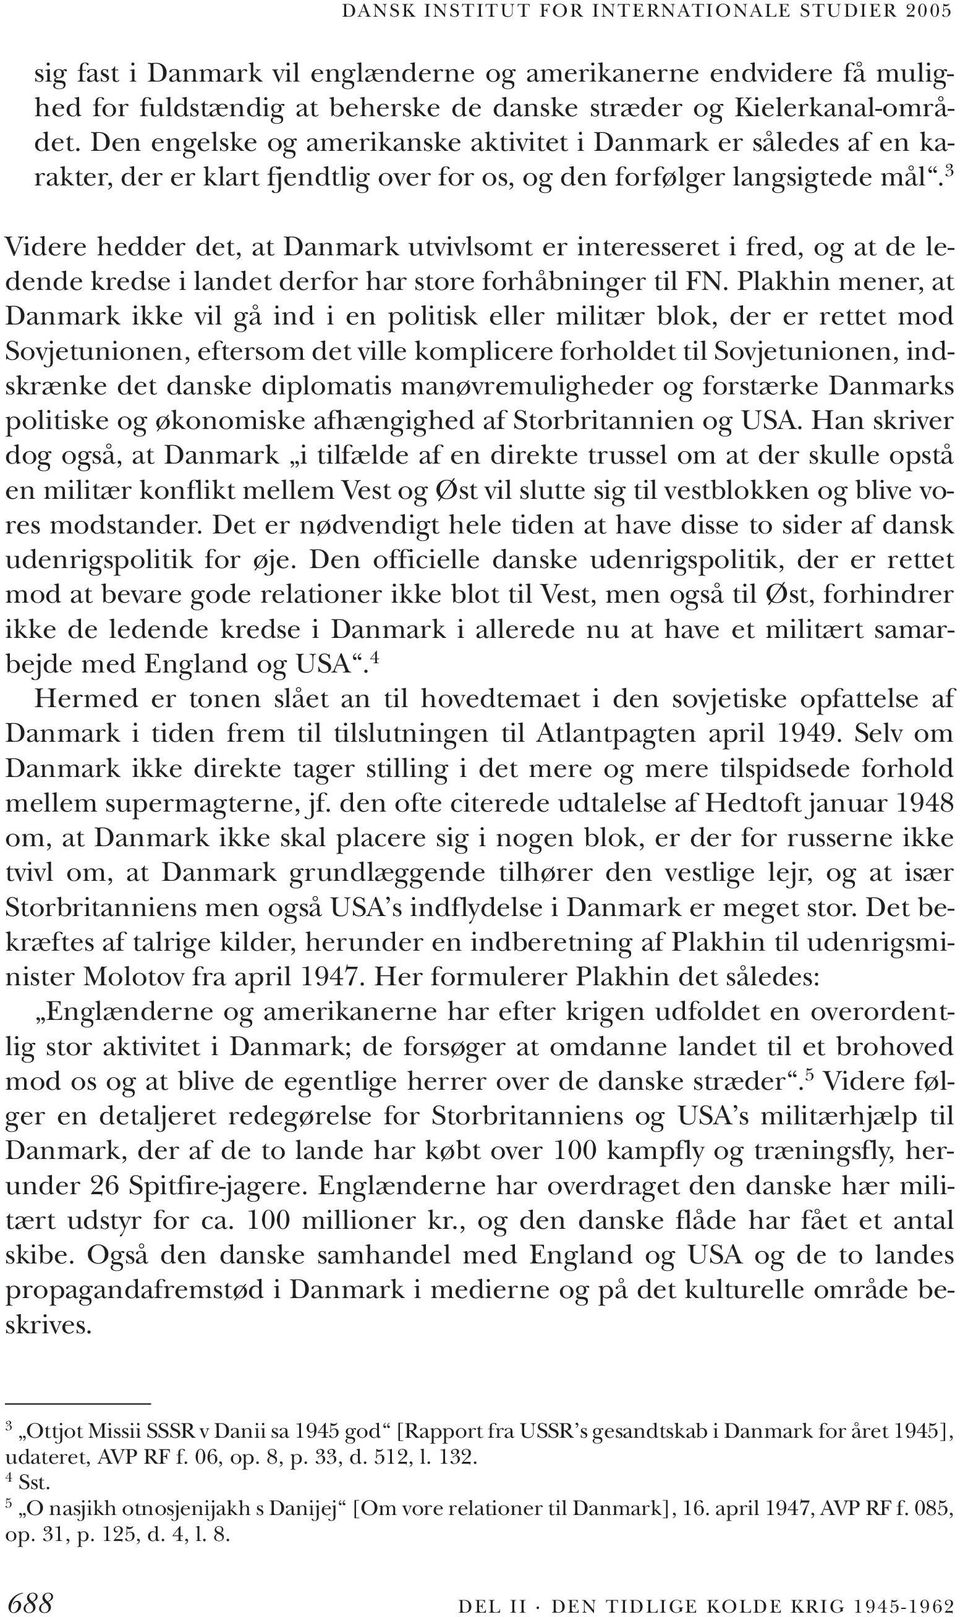 3 Videre hedder det, at Danmark utvivlsomt er interesseret i fred, og at de ledende kredse i landet derfor har store forhåbninger til FN.